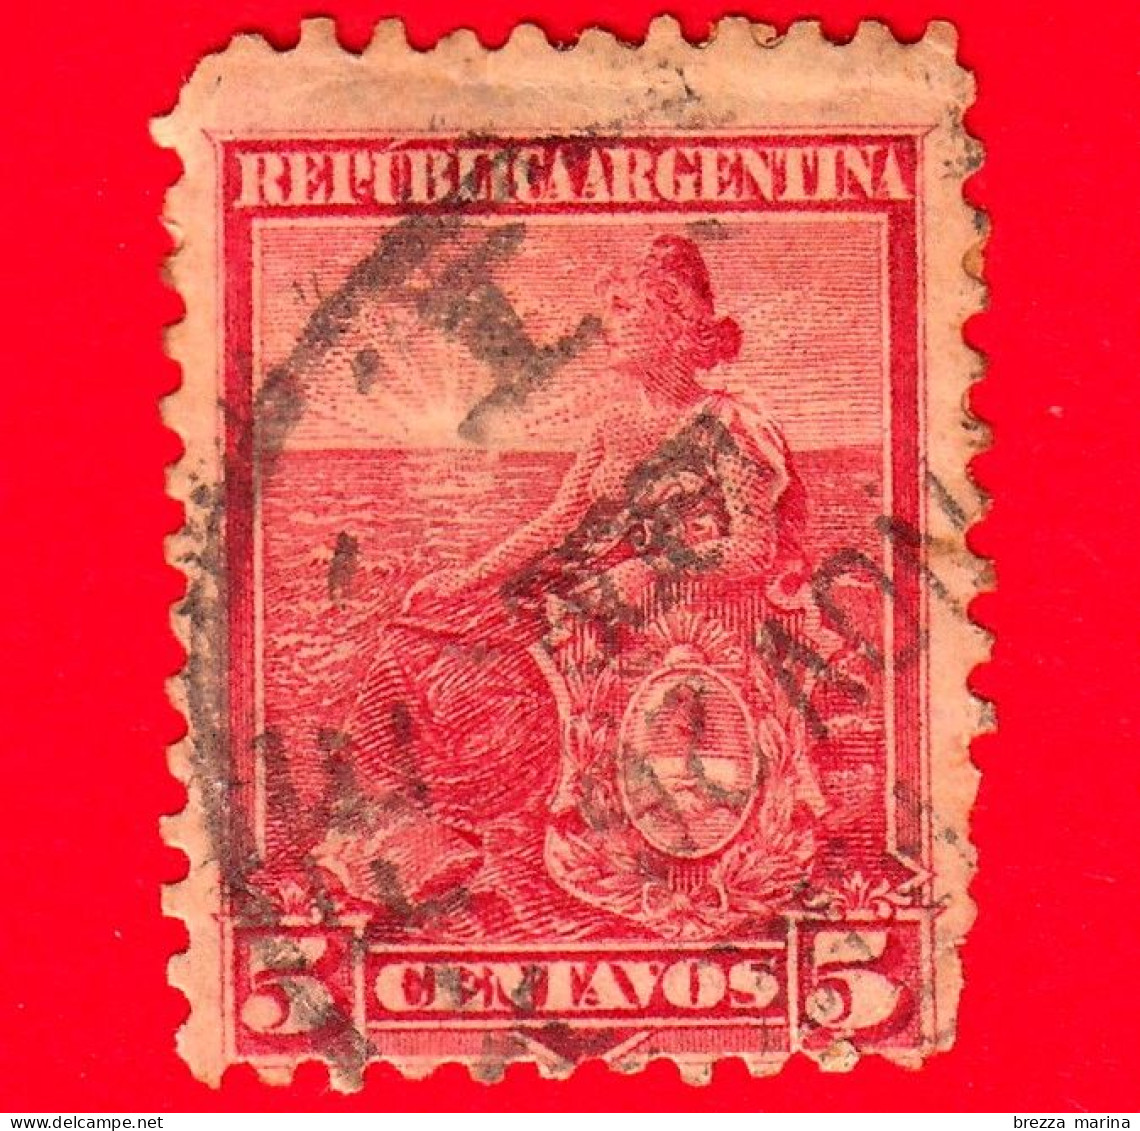 ARGENTINA - Usato - 1899 - Simboli Della Repubblica - Allegoria, Libertà Seduta - 5 - Used Stamps